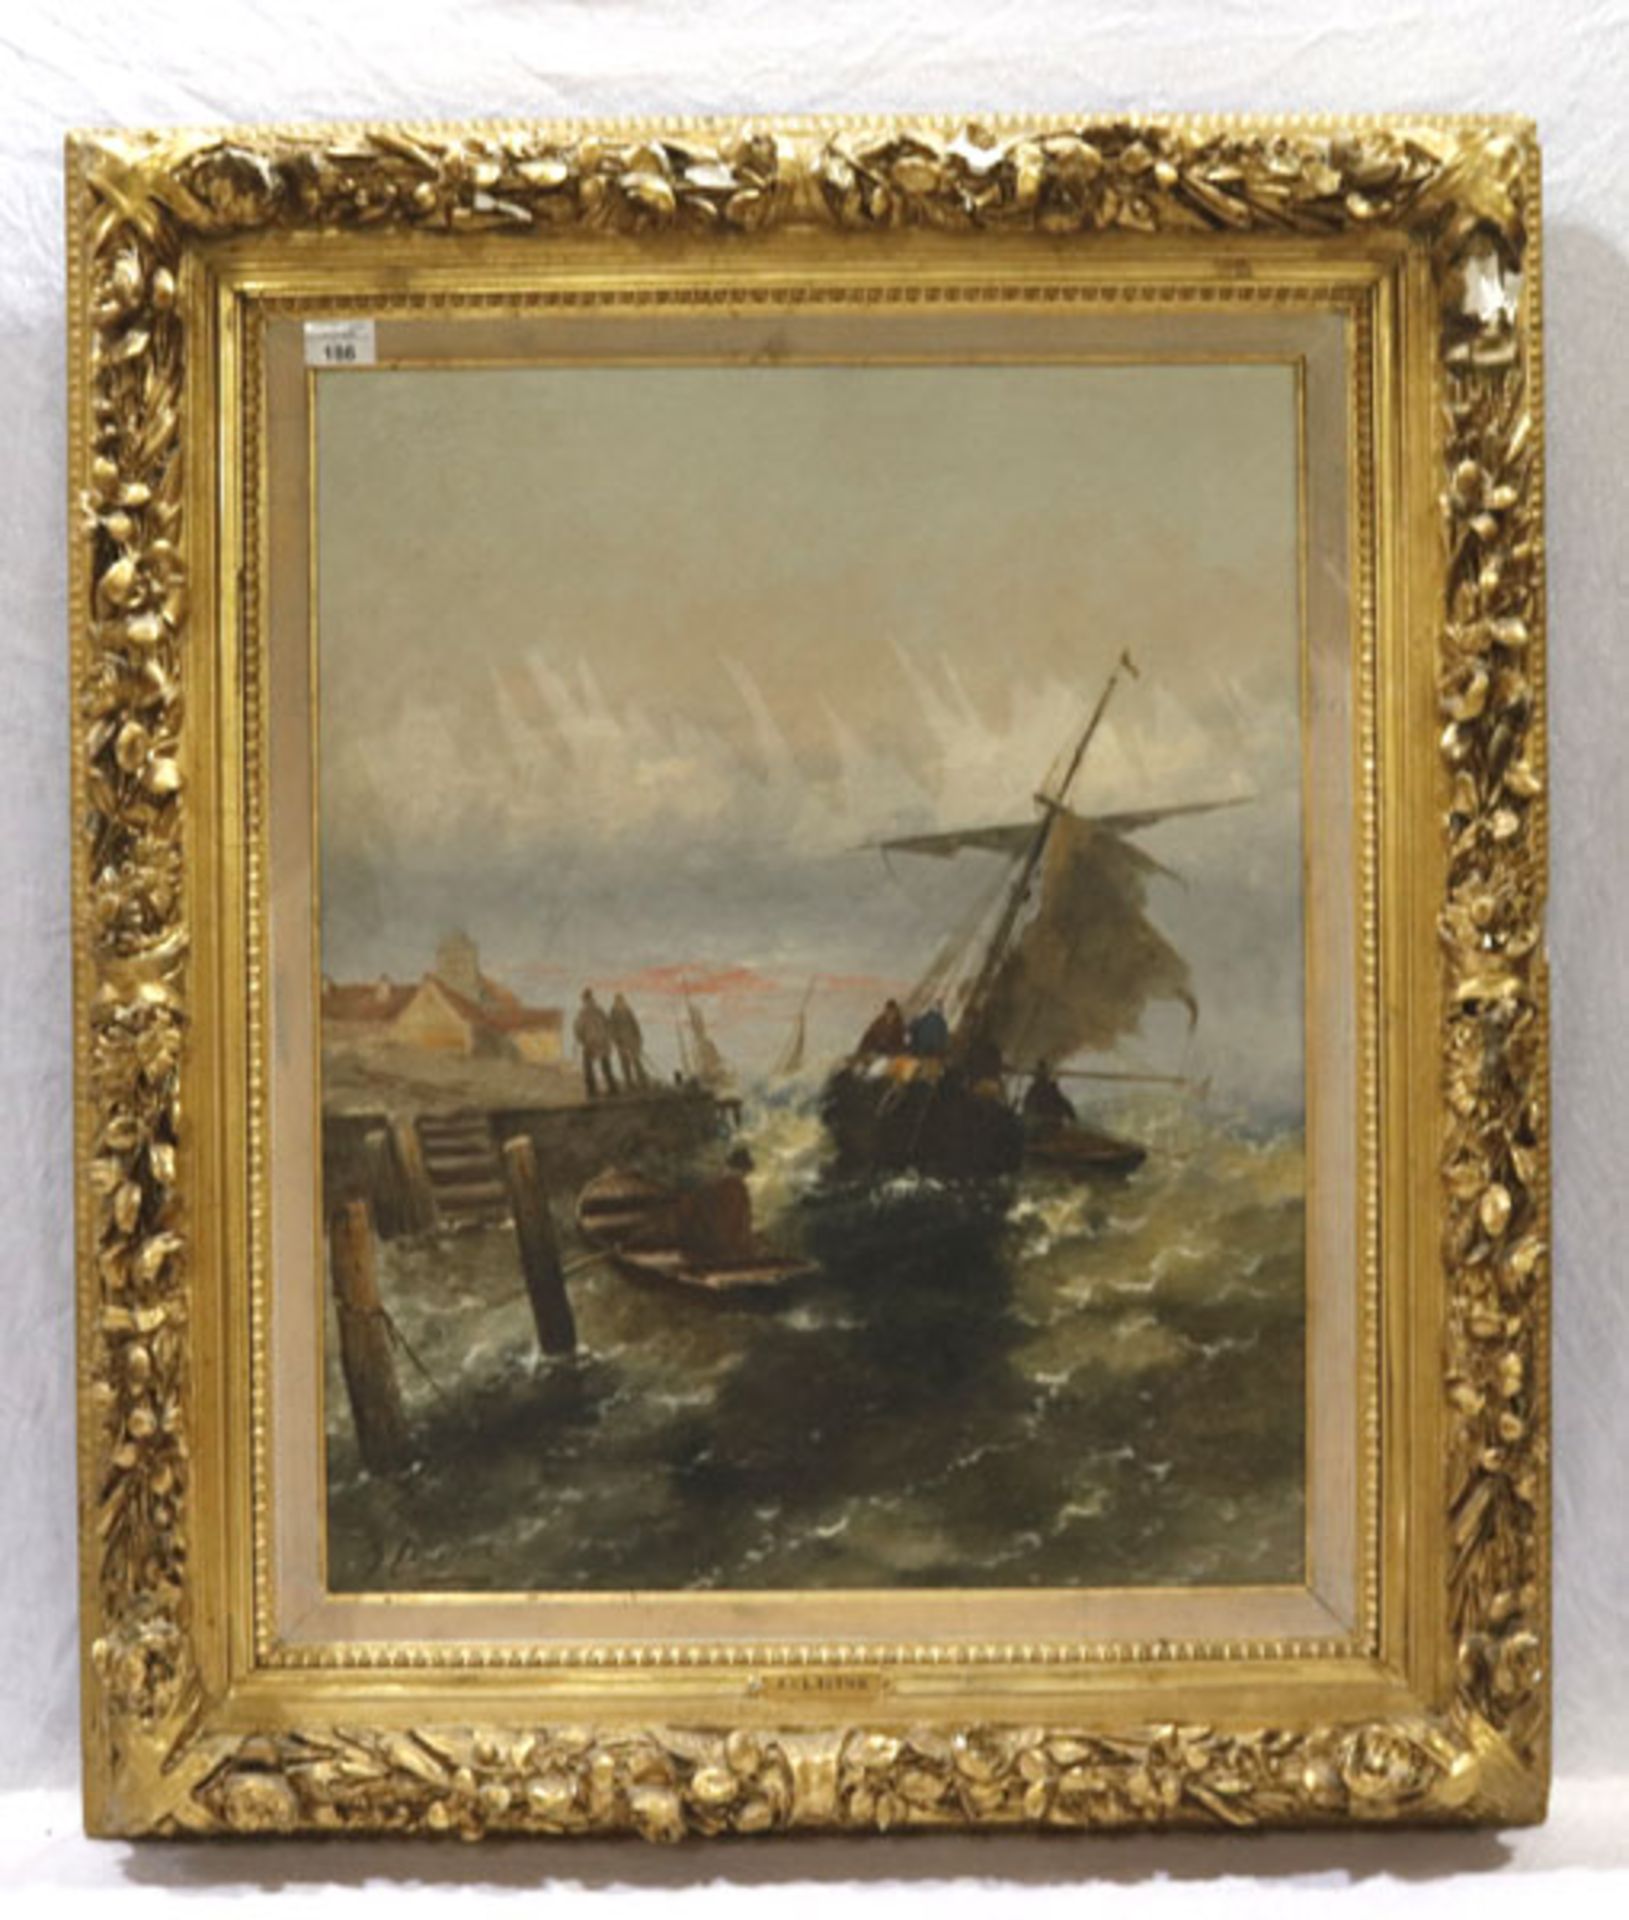 Gemälde ÖL/LW 'Boote auf stürmischer See an Küste', signiert J. Claiton (Pseudonym für Georg